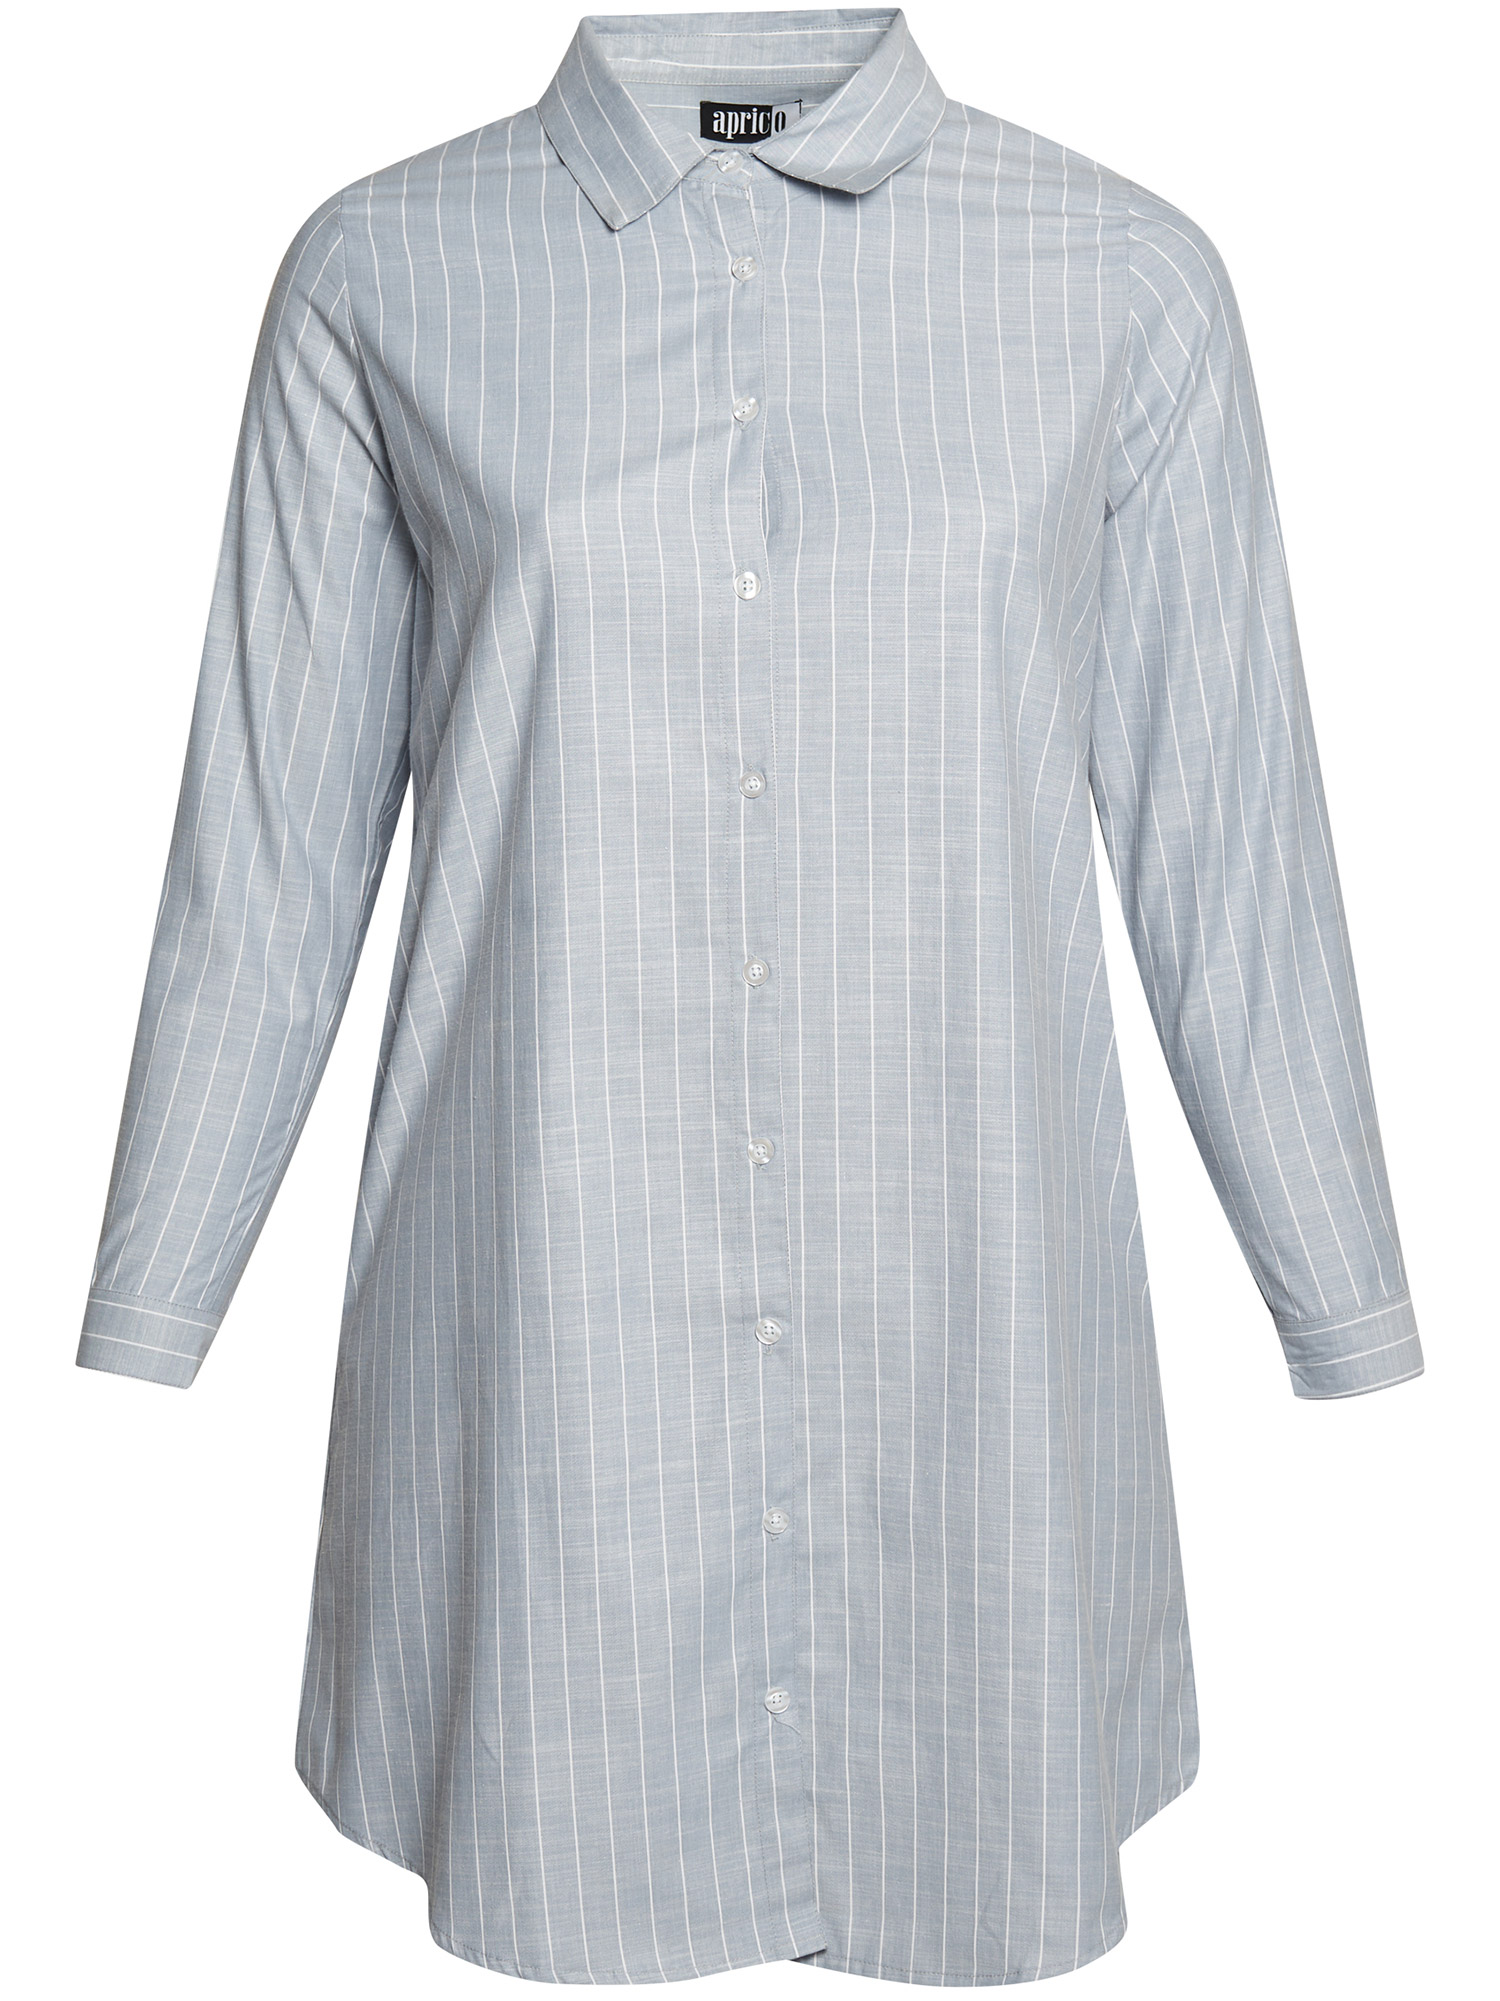 Norwalk - Lyseblå skjorte med striper fra Aprico